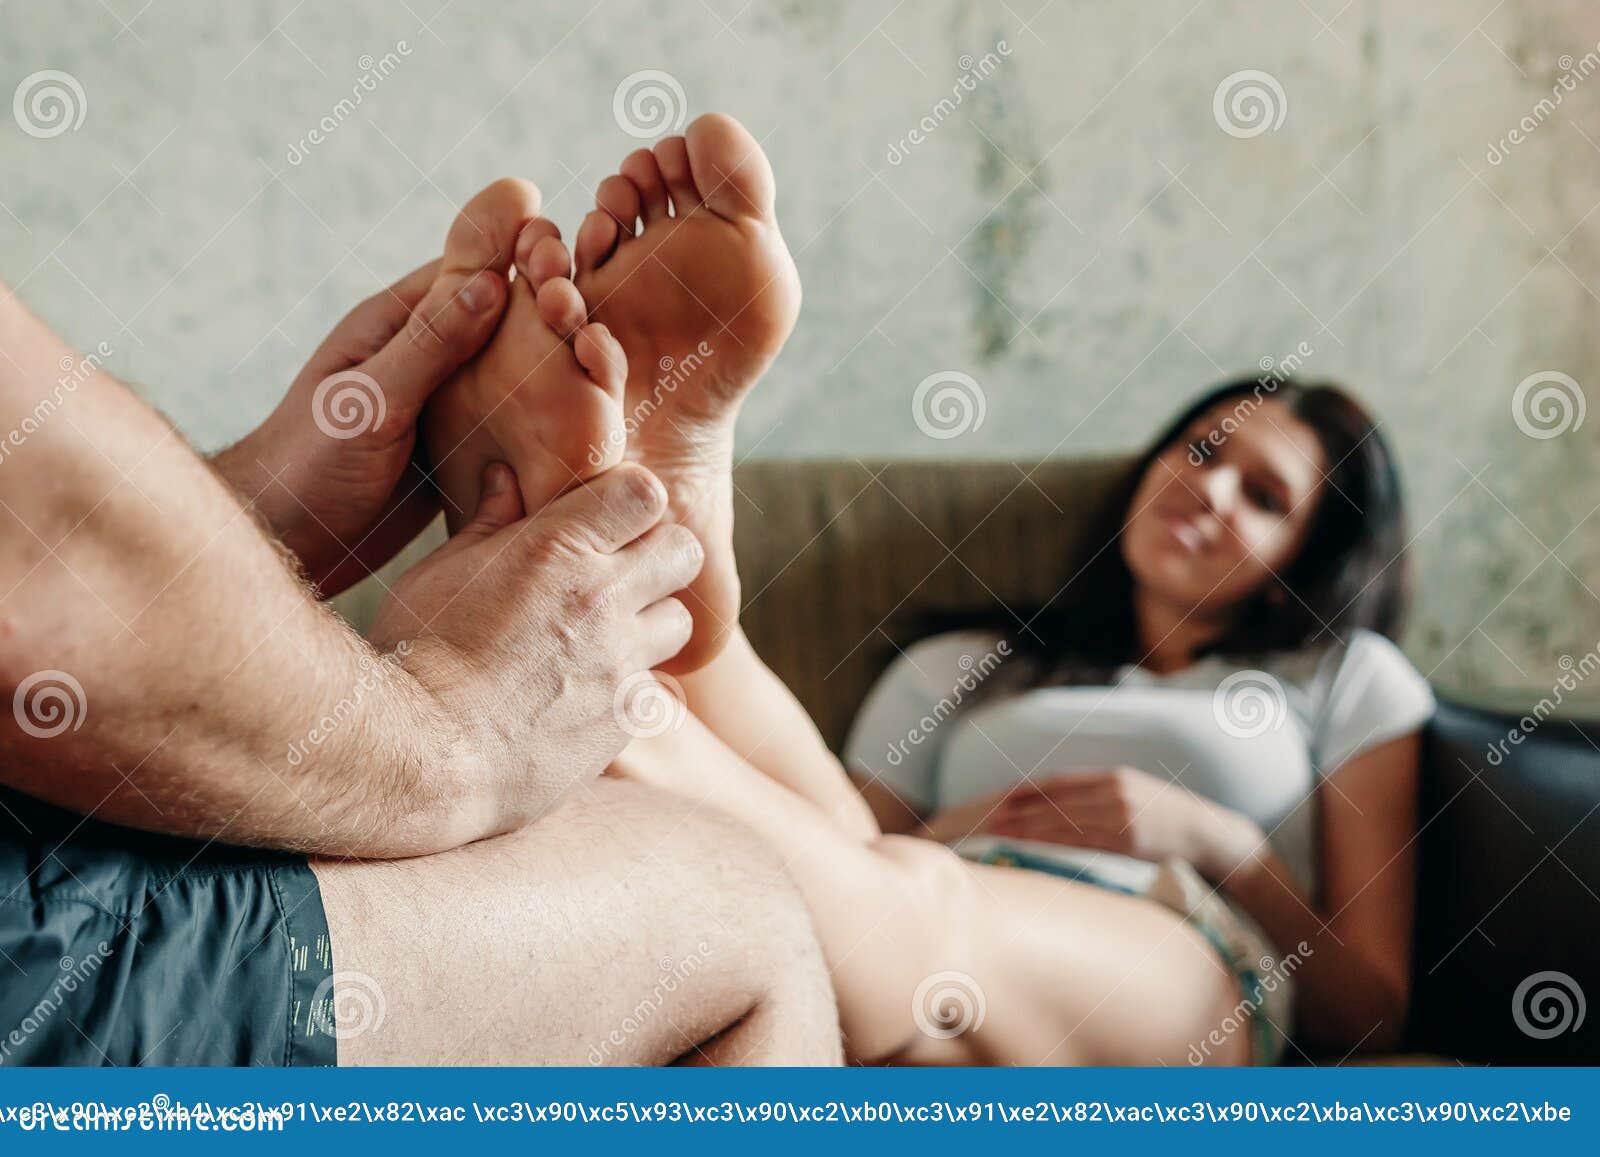 Ноги супругов